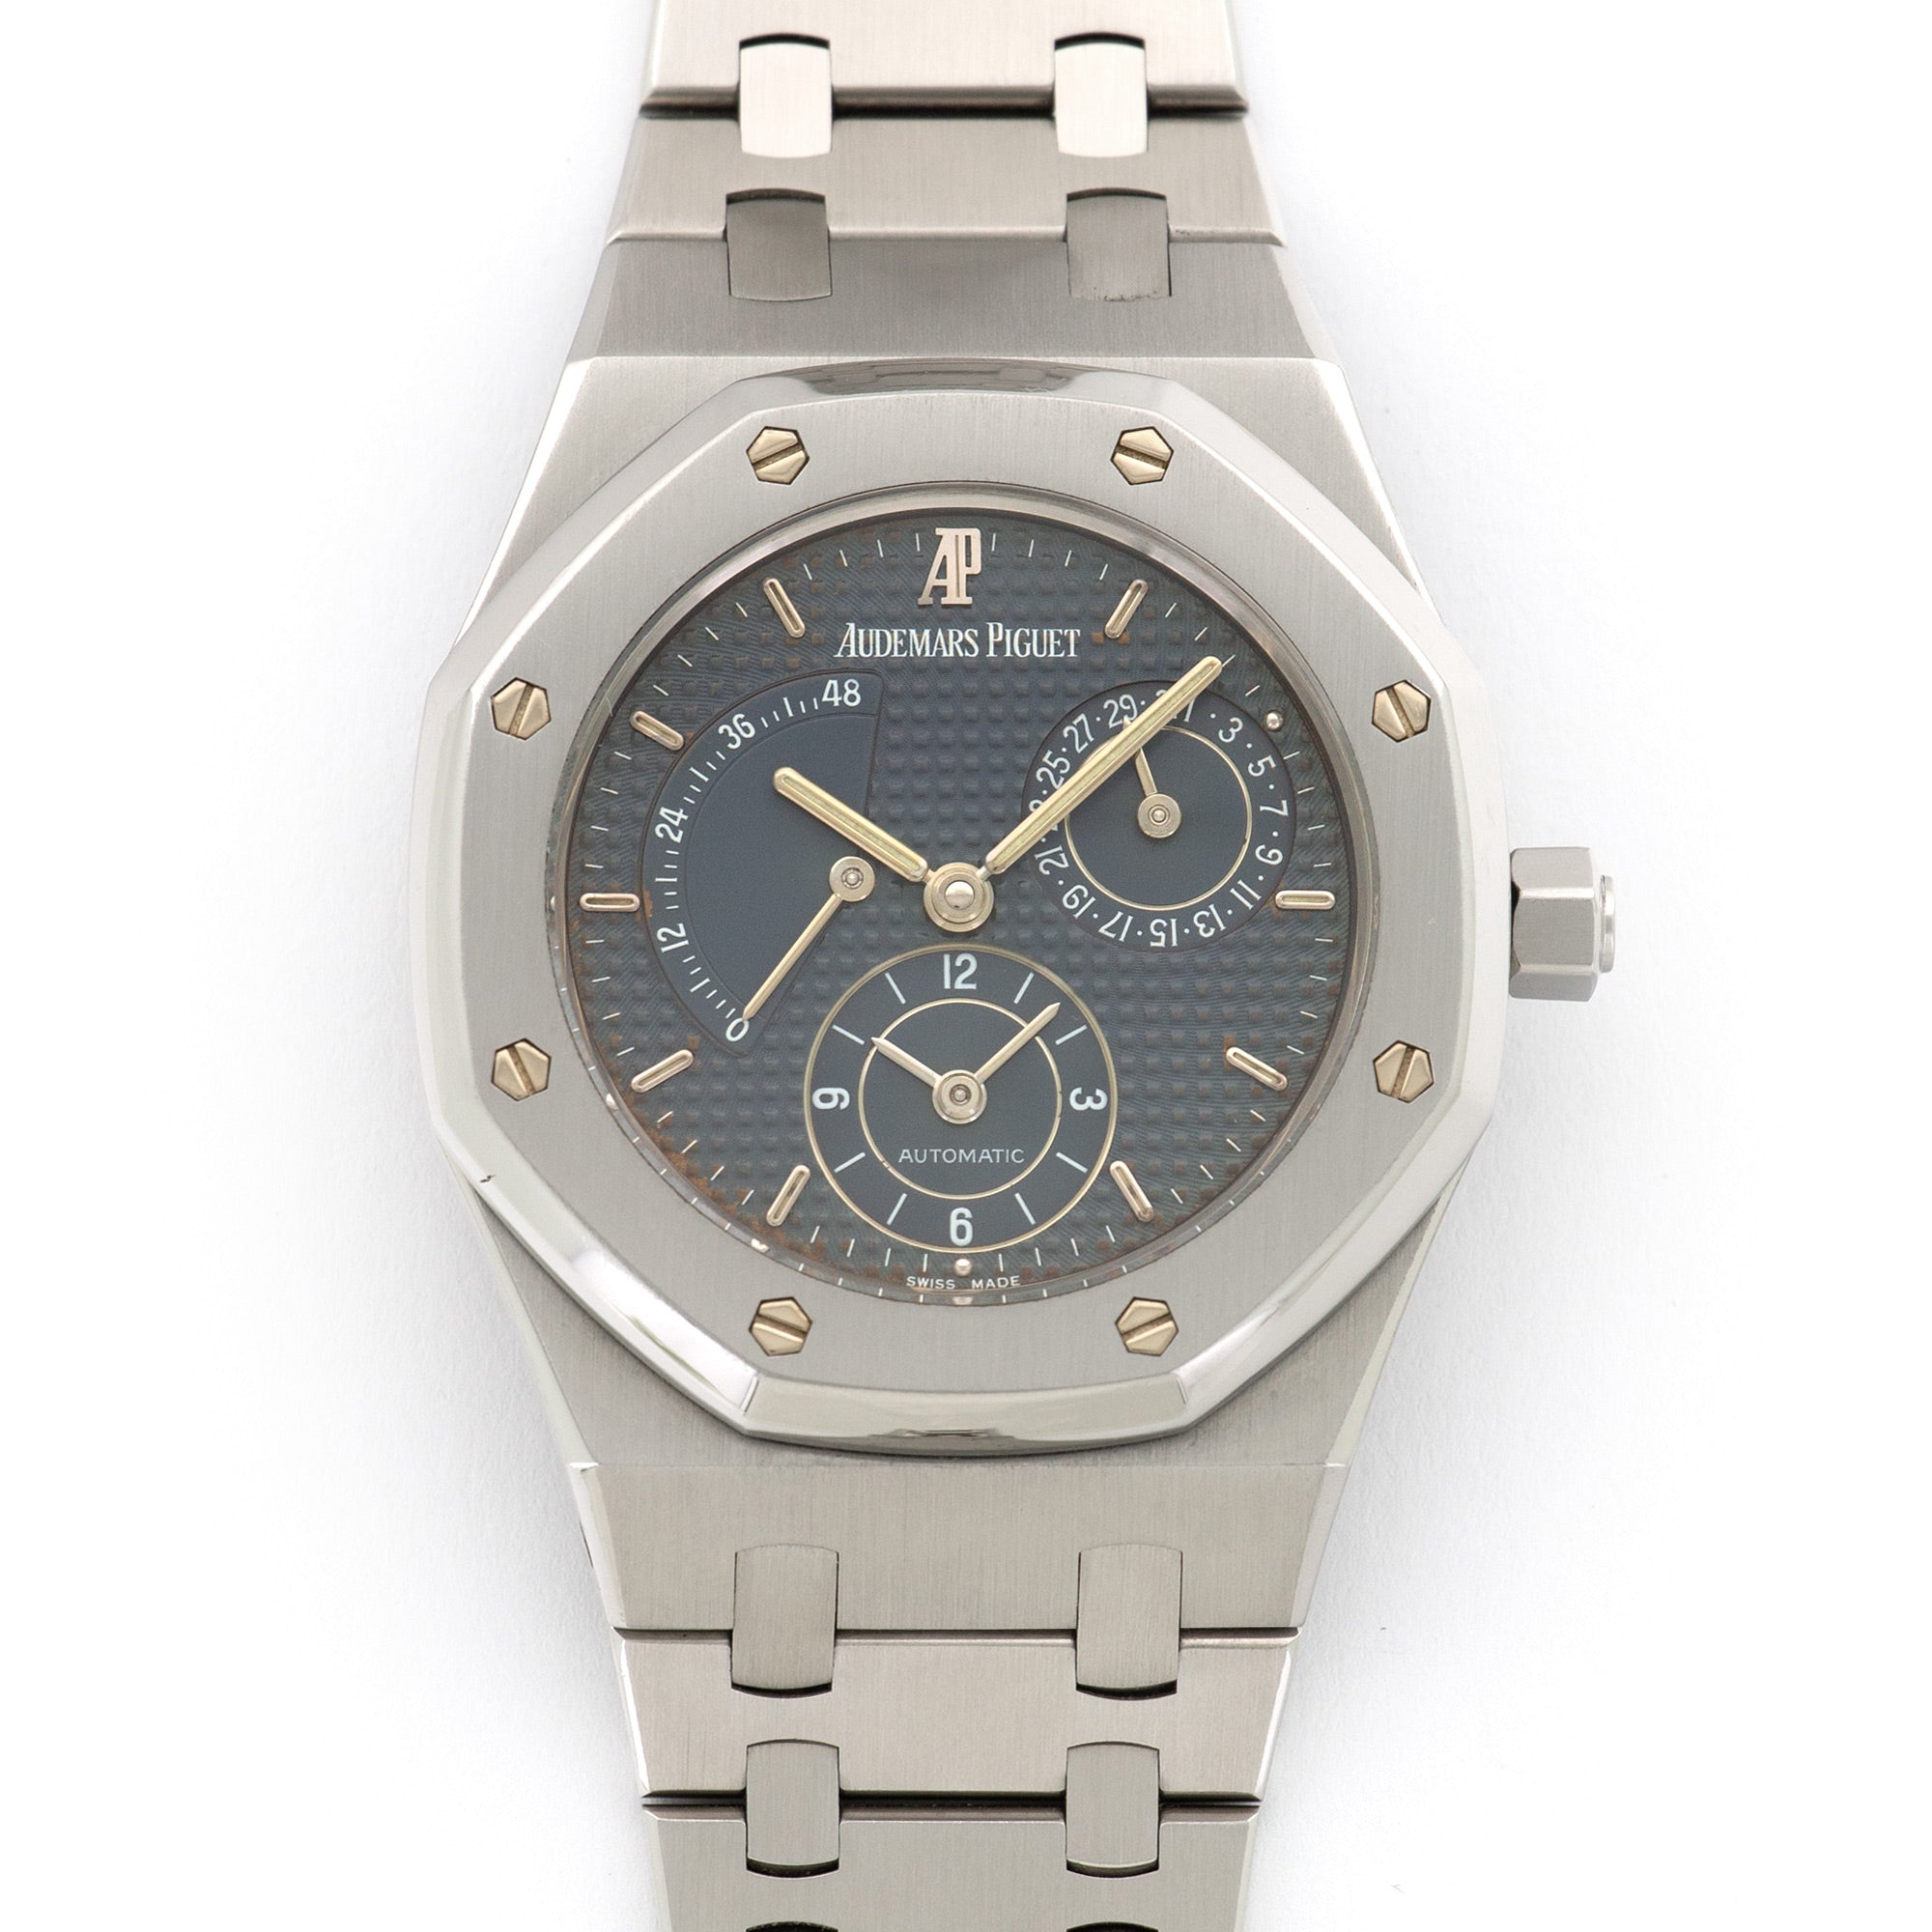 Audemars Piguet - Audemars Piguet Royal Oak Dual Time Watch Ref. 25730 - The Keystone Watches